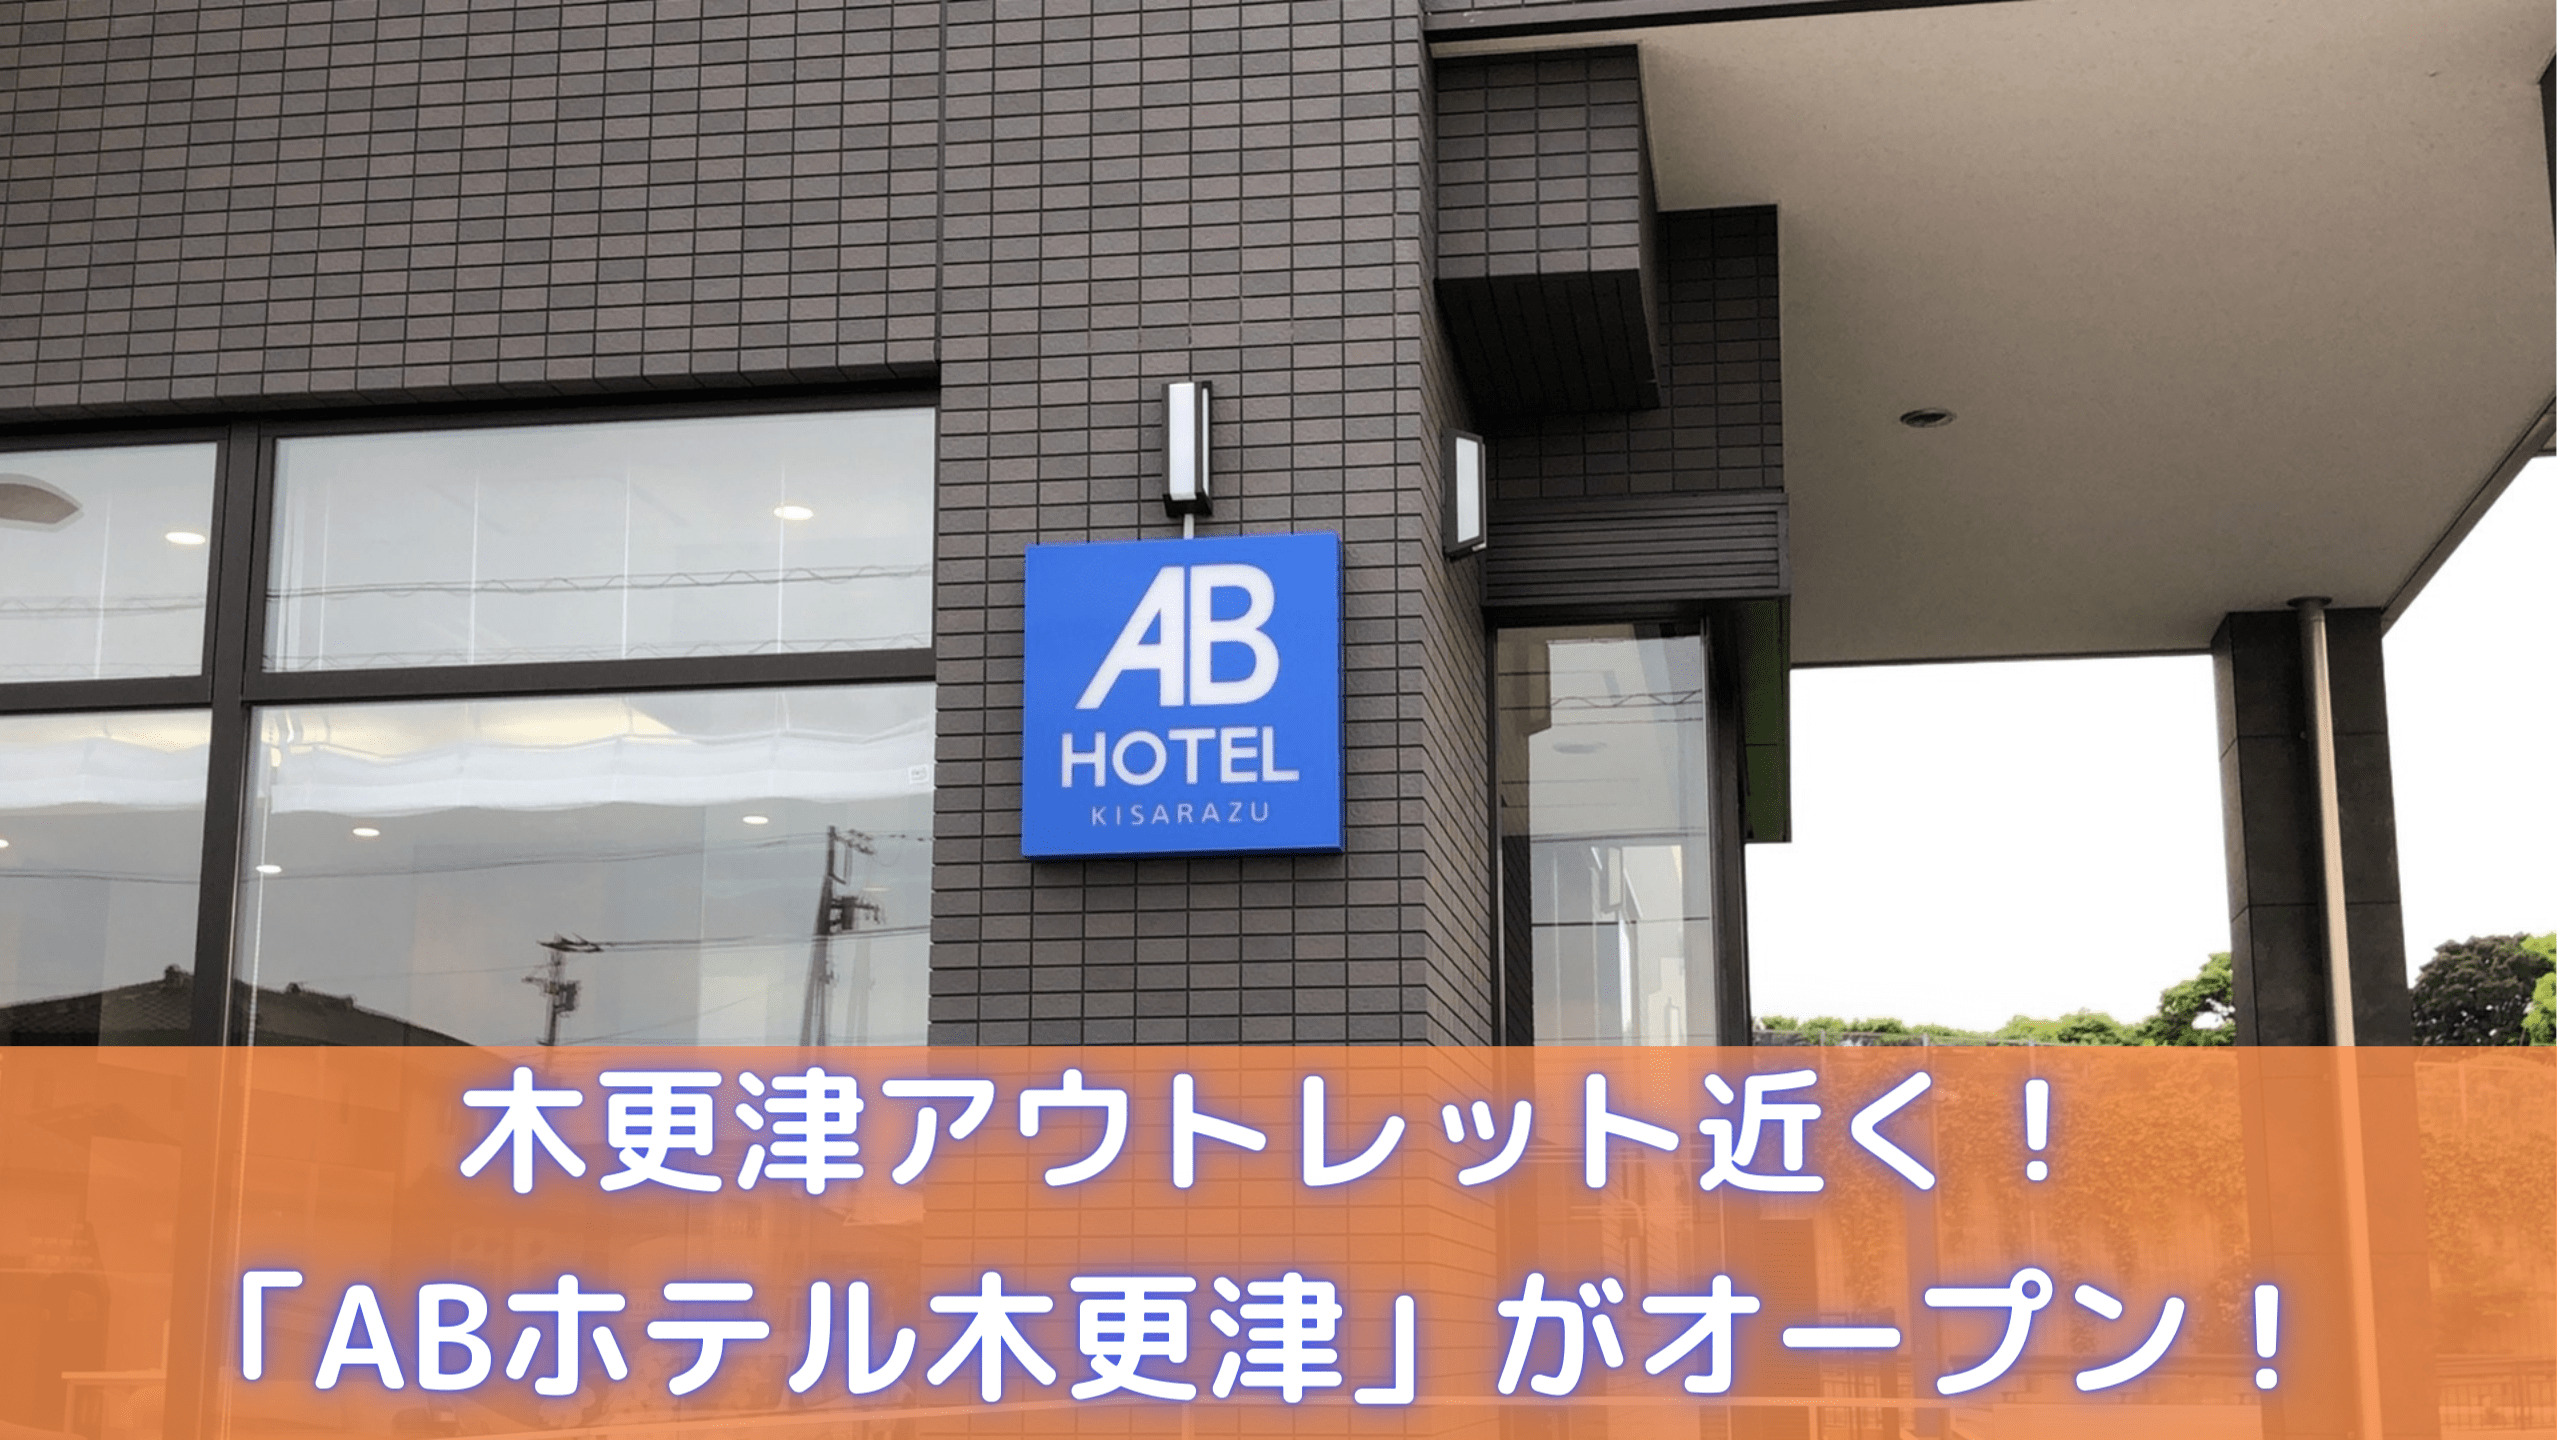 Ab ホテル